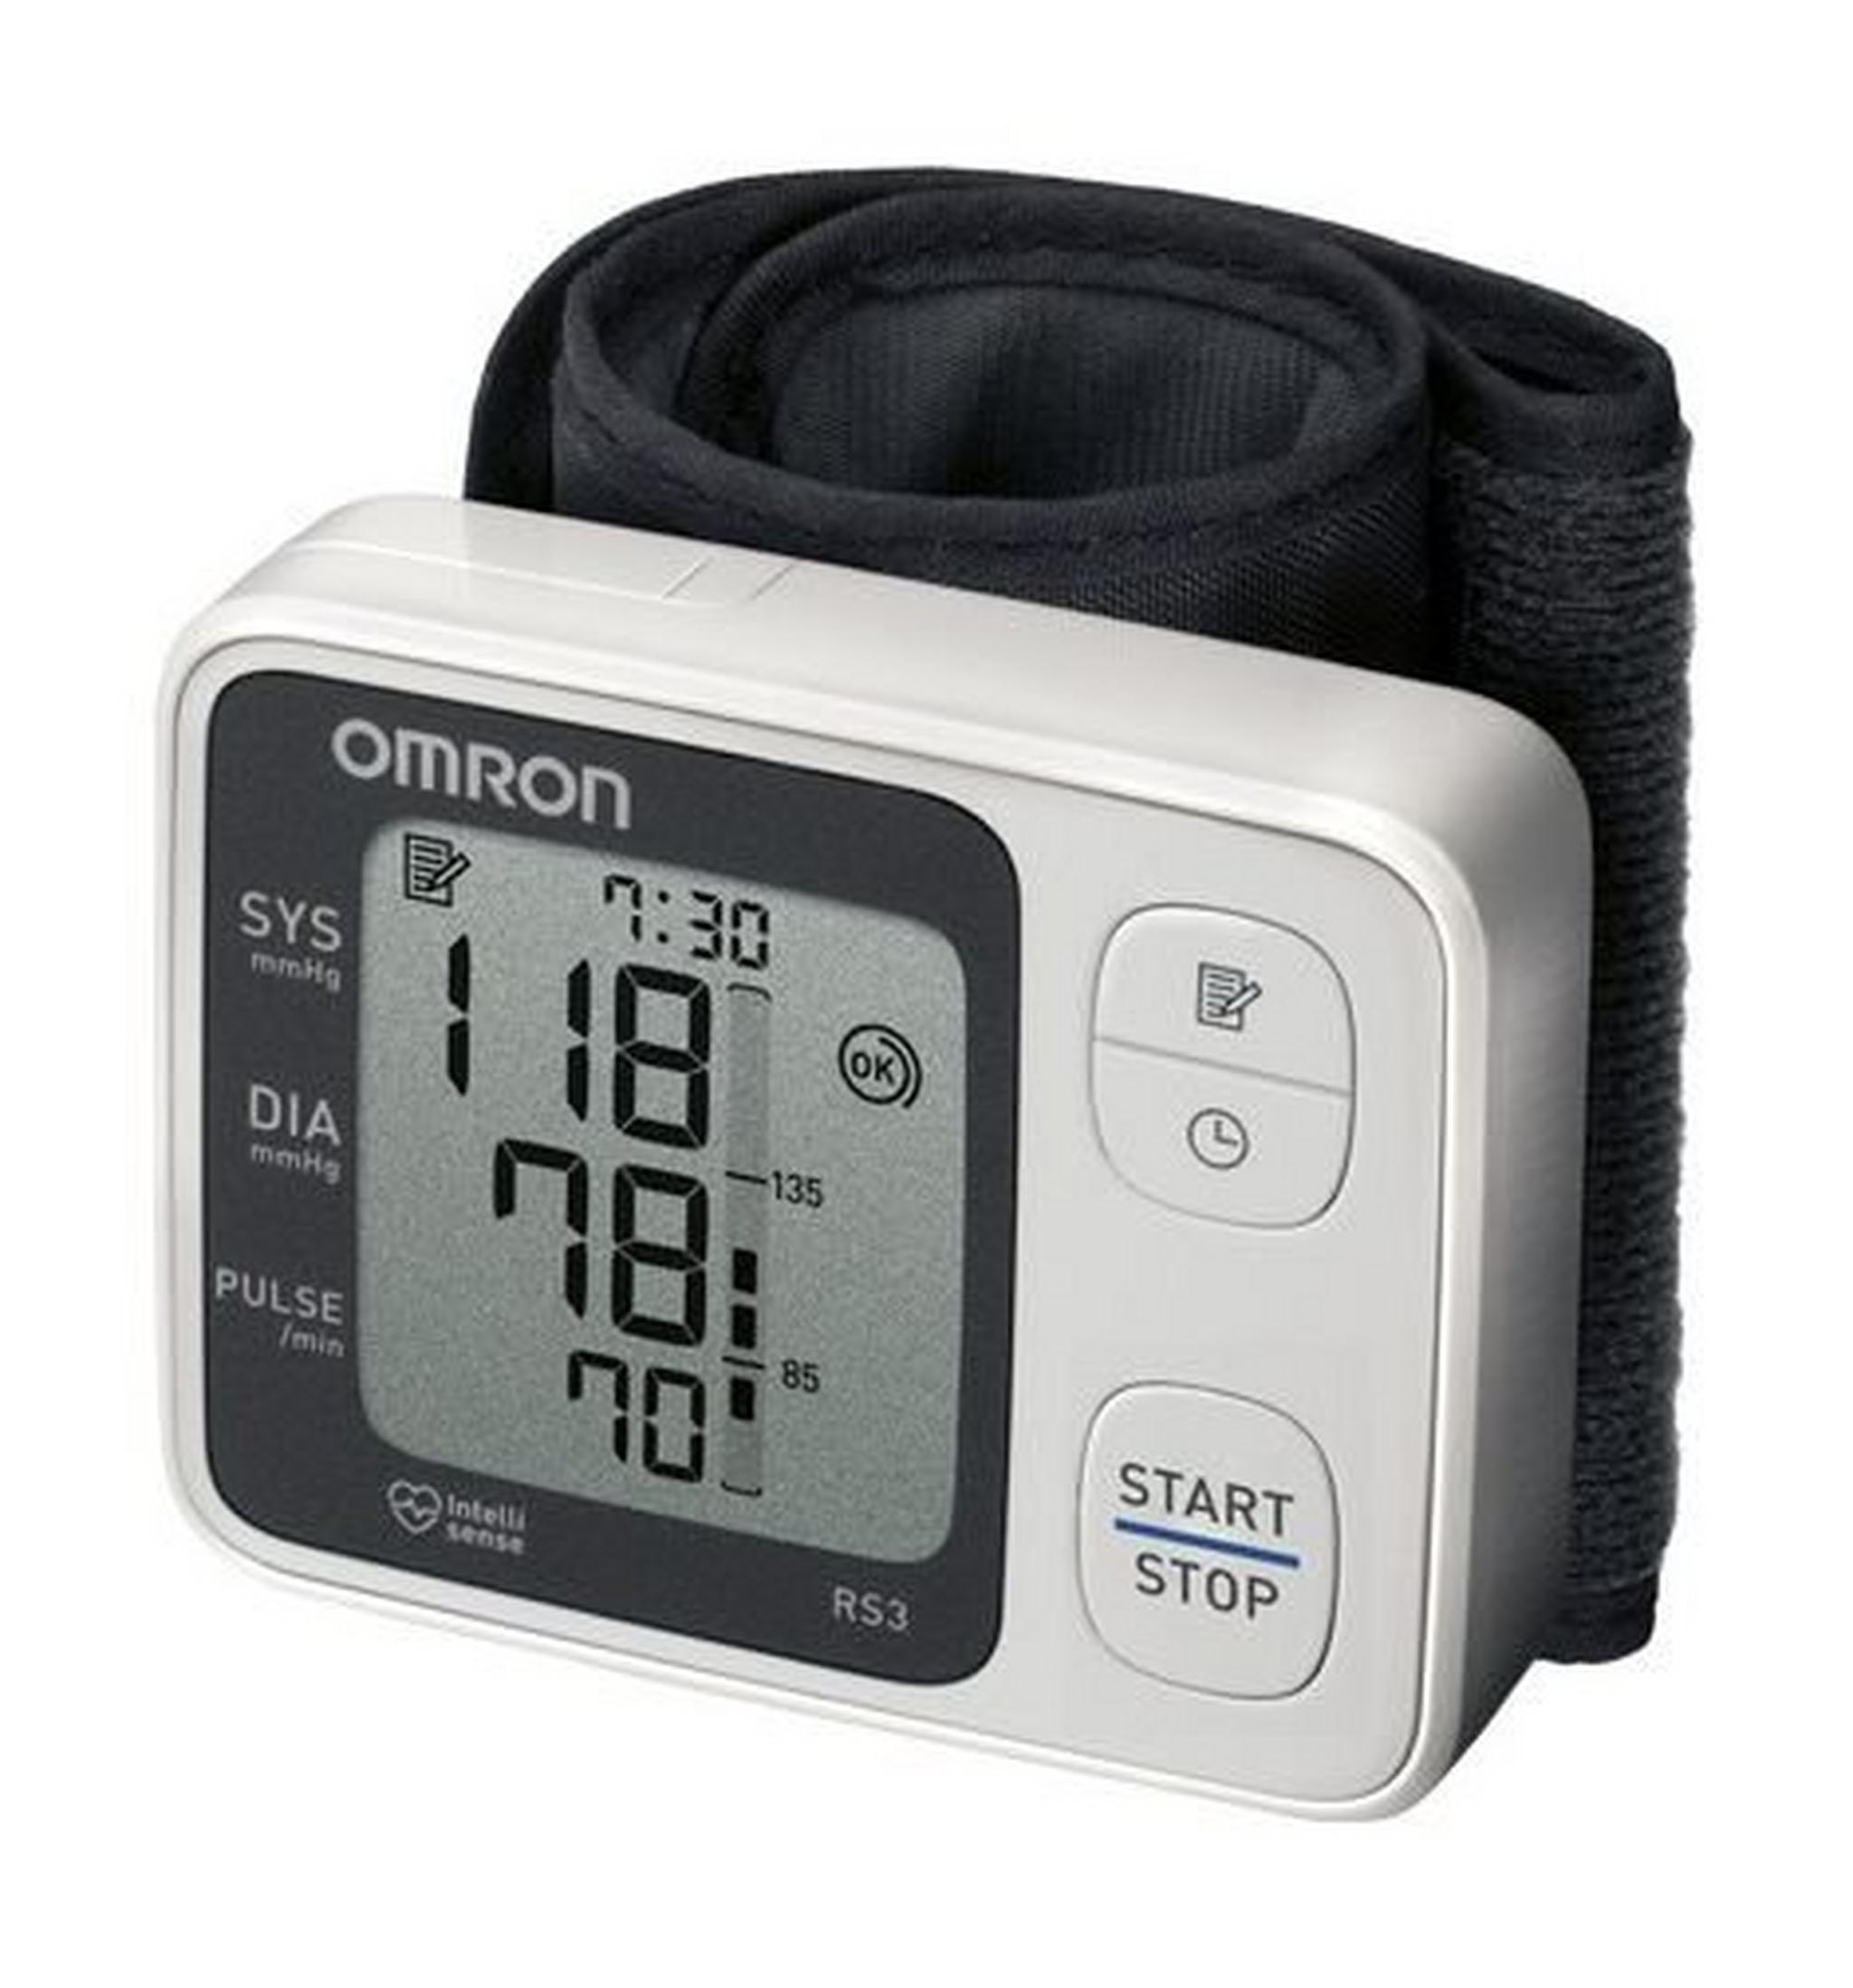 جهاز قياس ضغط الدم من خلال الرسغ من أومرون -HEM-6130